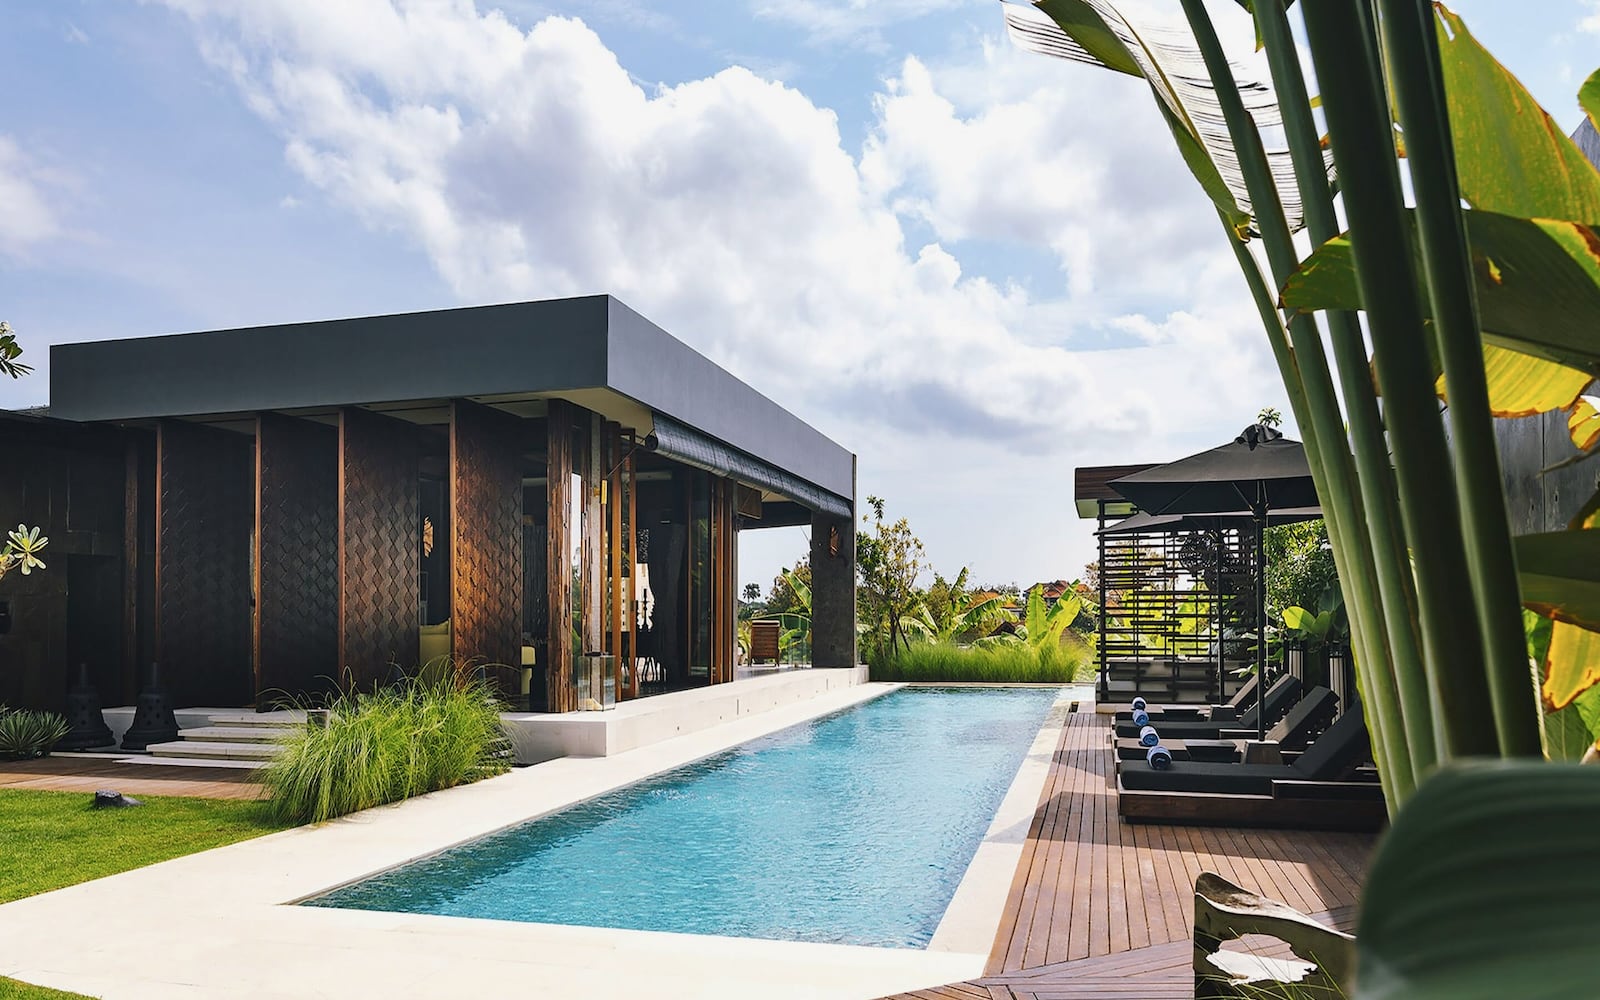 Best Villas In Bali